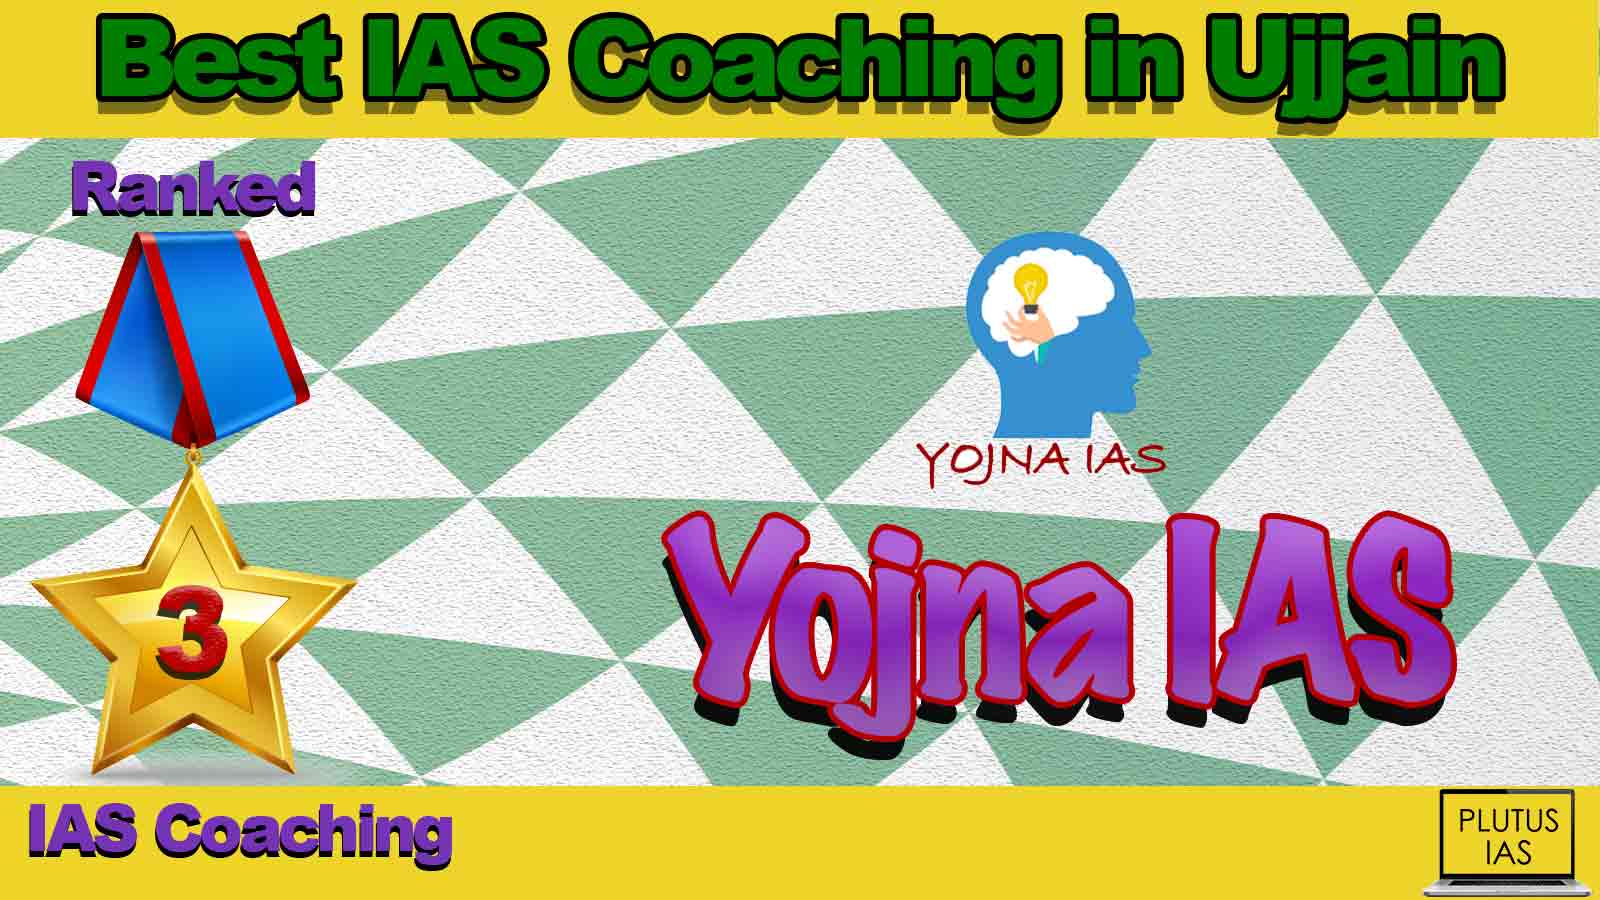 Top IAS Coaching in Ujjain